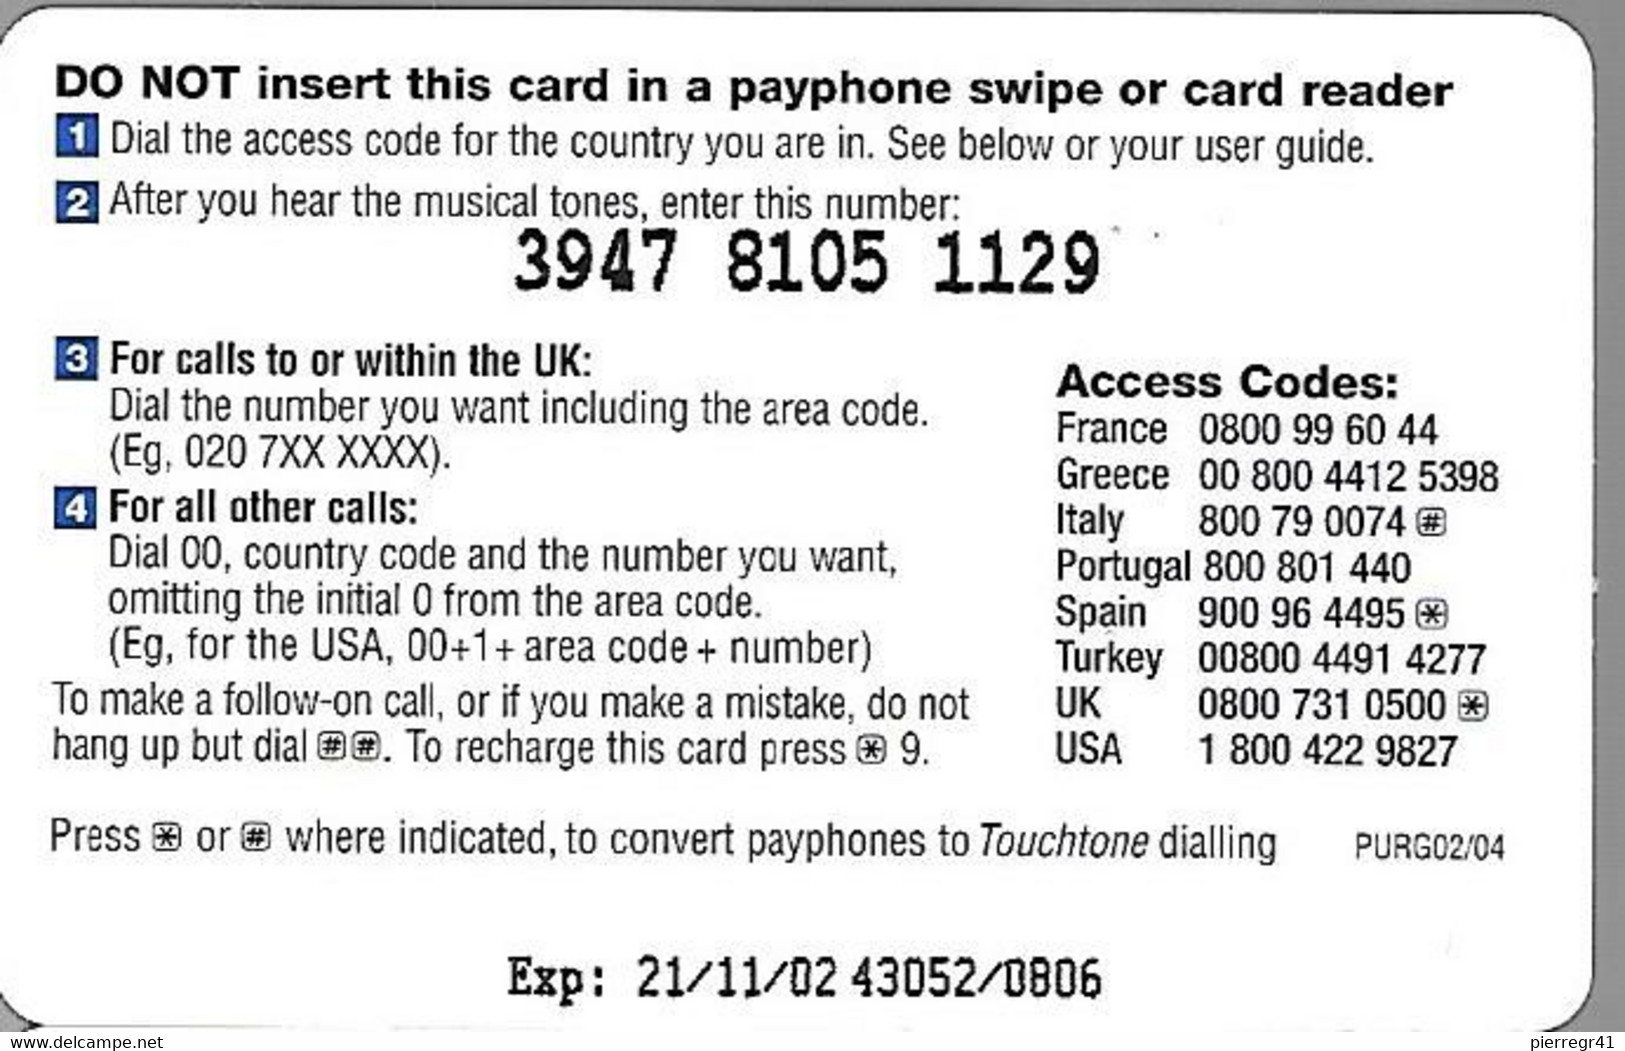 CARTE-PREPAYEE-GB-BT Global 5£--Exp21/11/02 -Gratté-Plastic Epais-TBE-RARE - BT Global Cards (Prepaid)